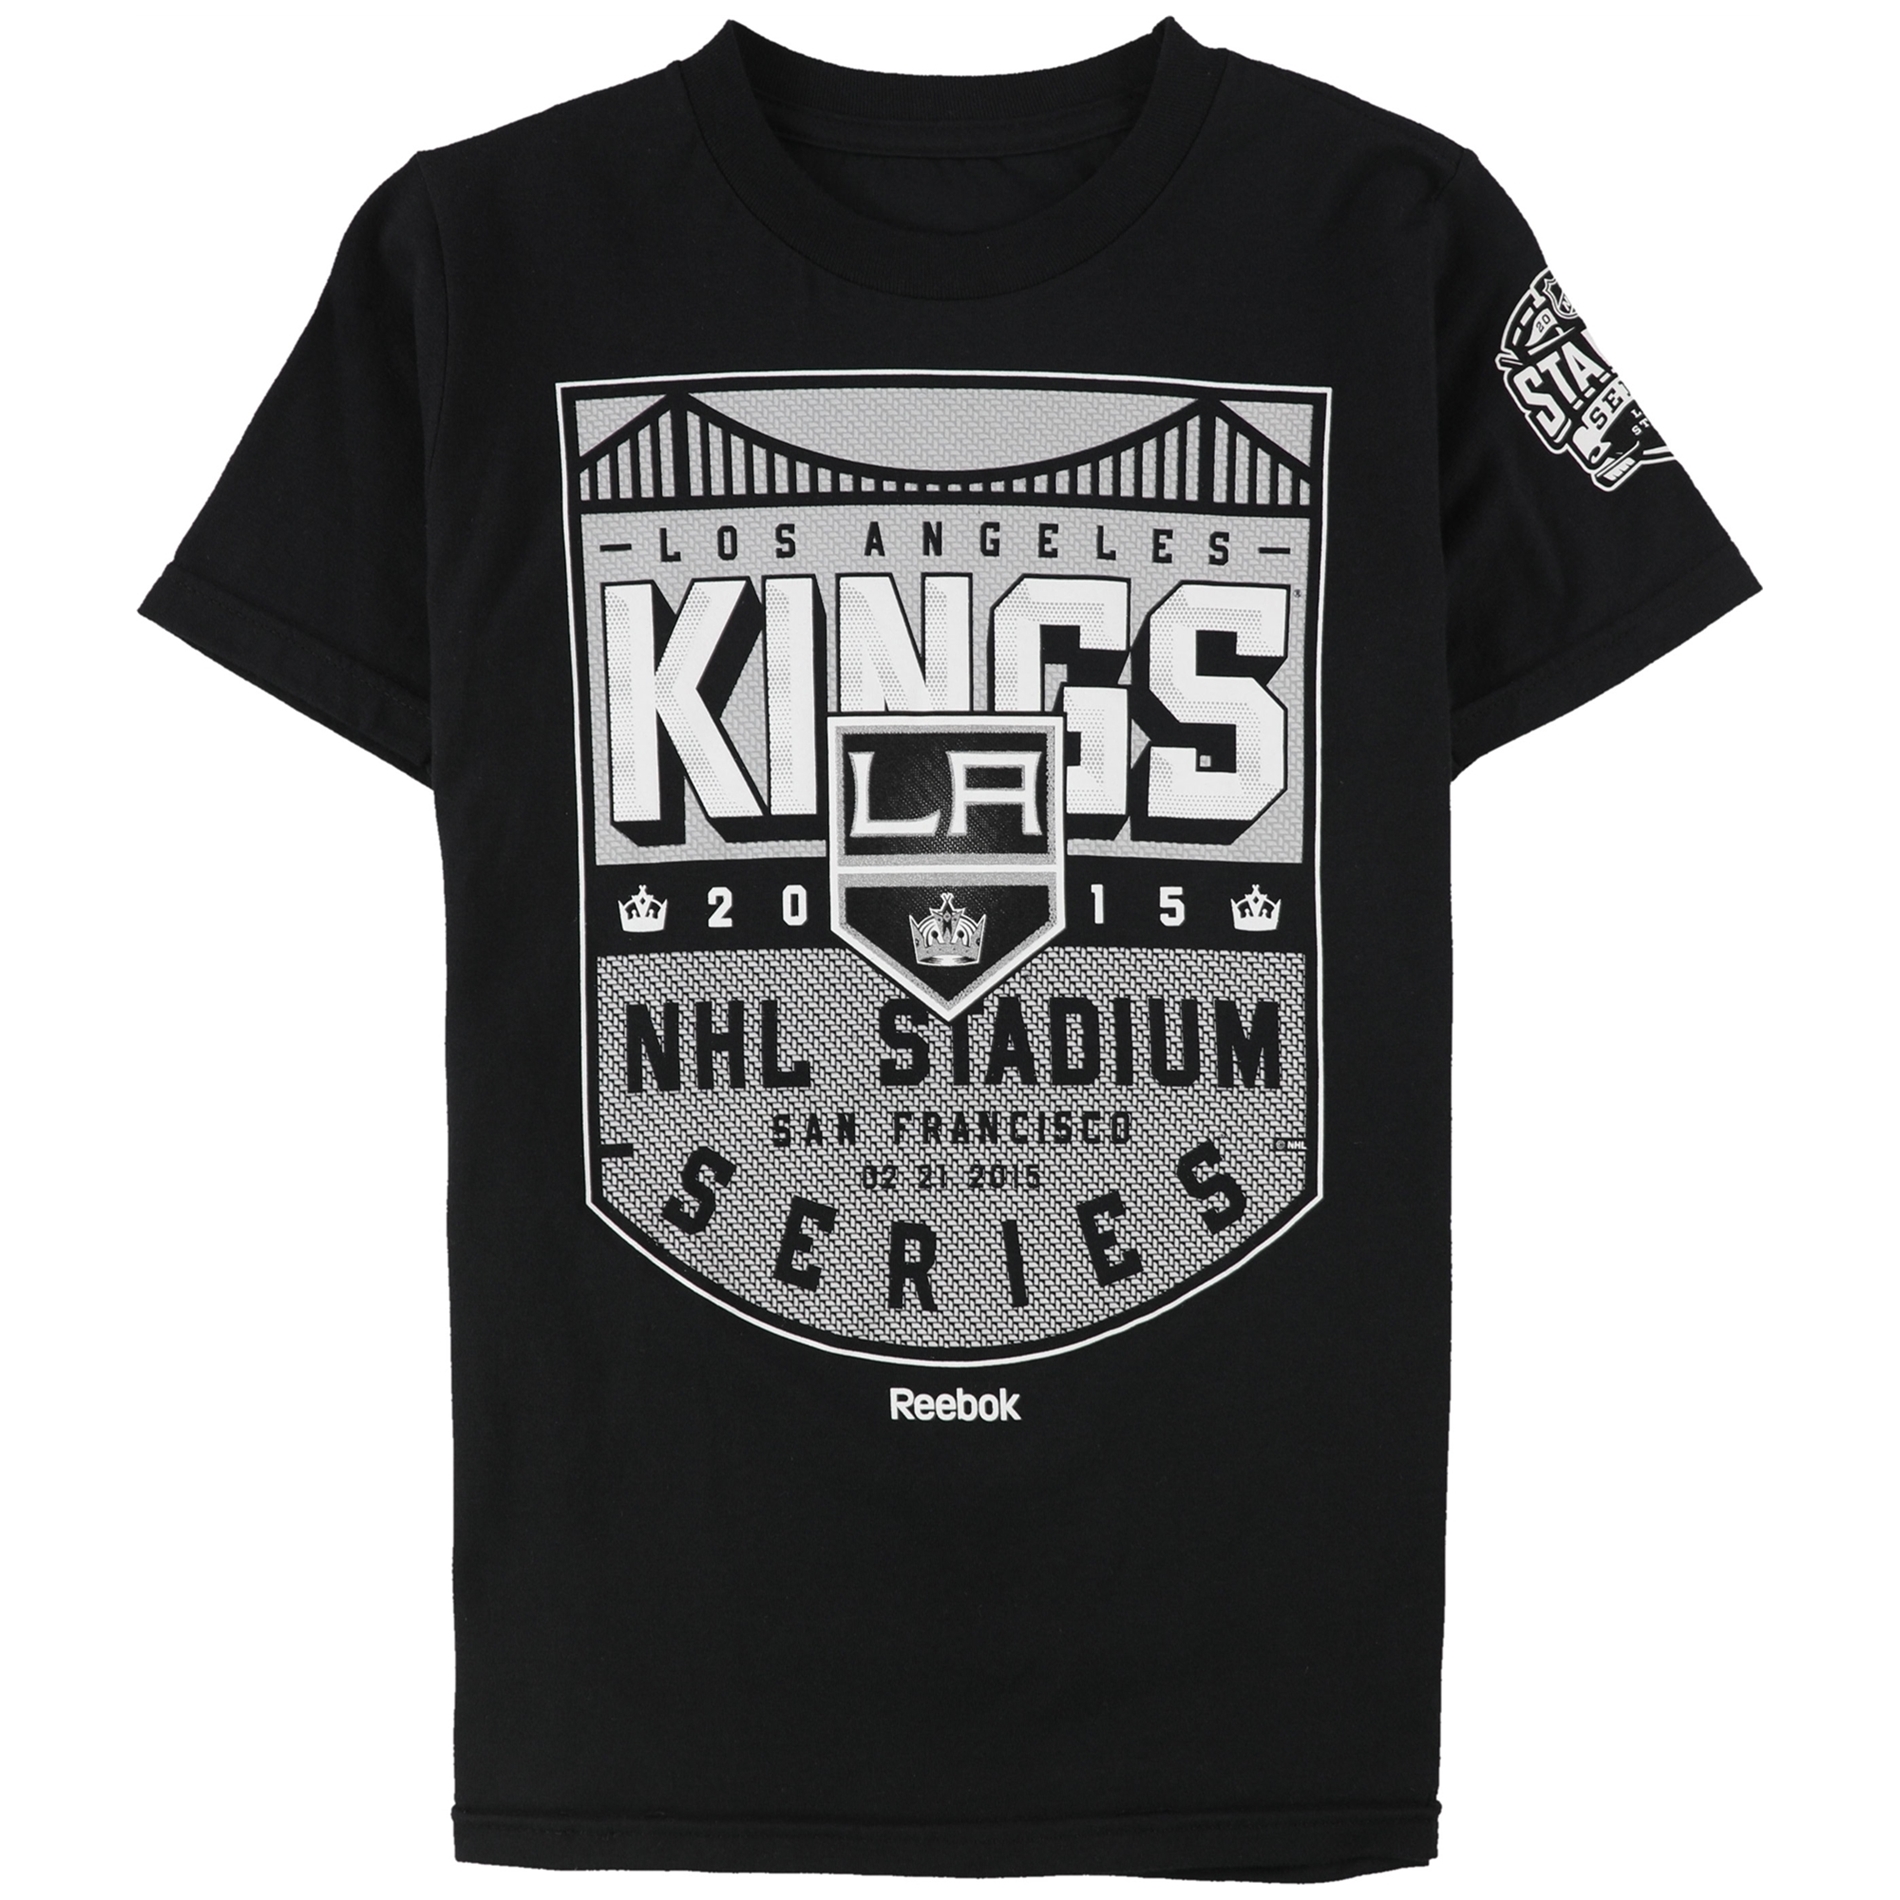 Reebok Boys 2015 Los Angeles Kings Nhl Stadium Series Graphic T-Shirt